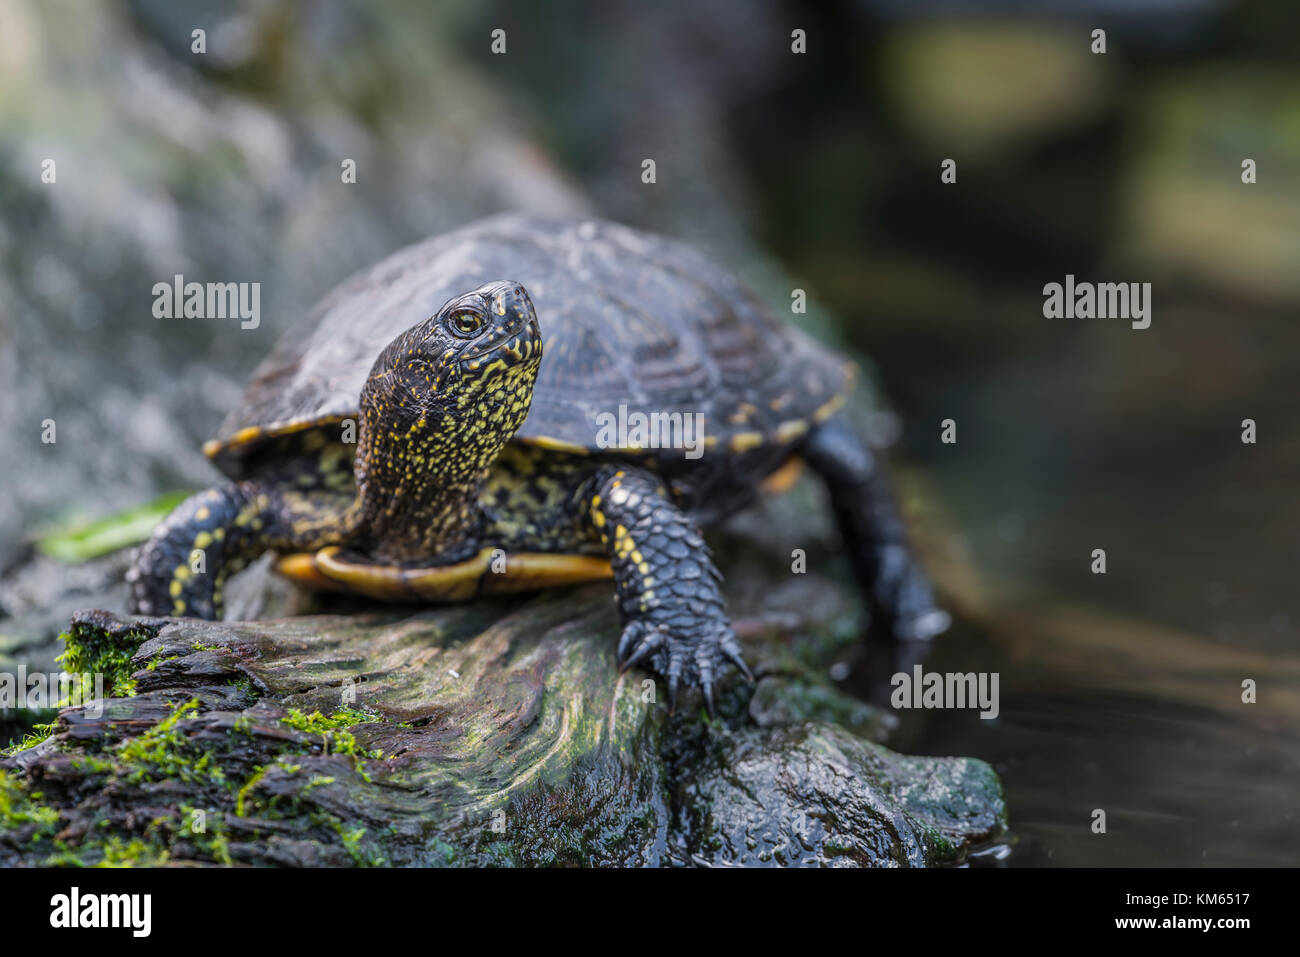 Europaeische Sumpfschildkroete, Emys orbicularis, European pond turtle Stock Photo